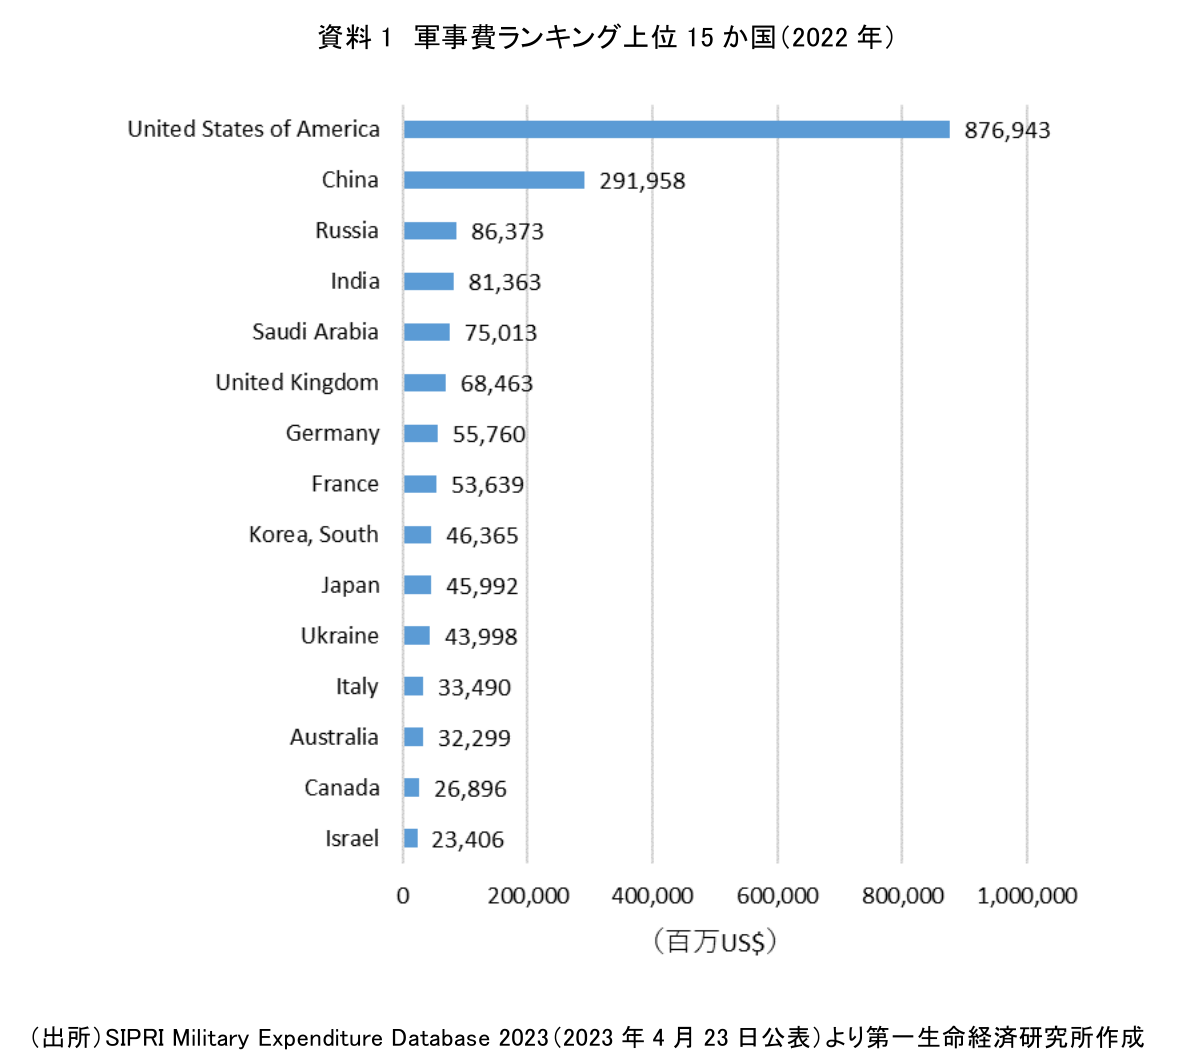 資料 1 軍事費ランキング上位 15 か国（2022 年）